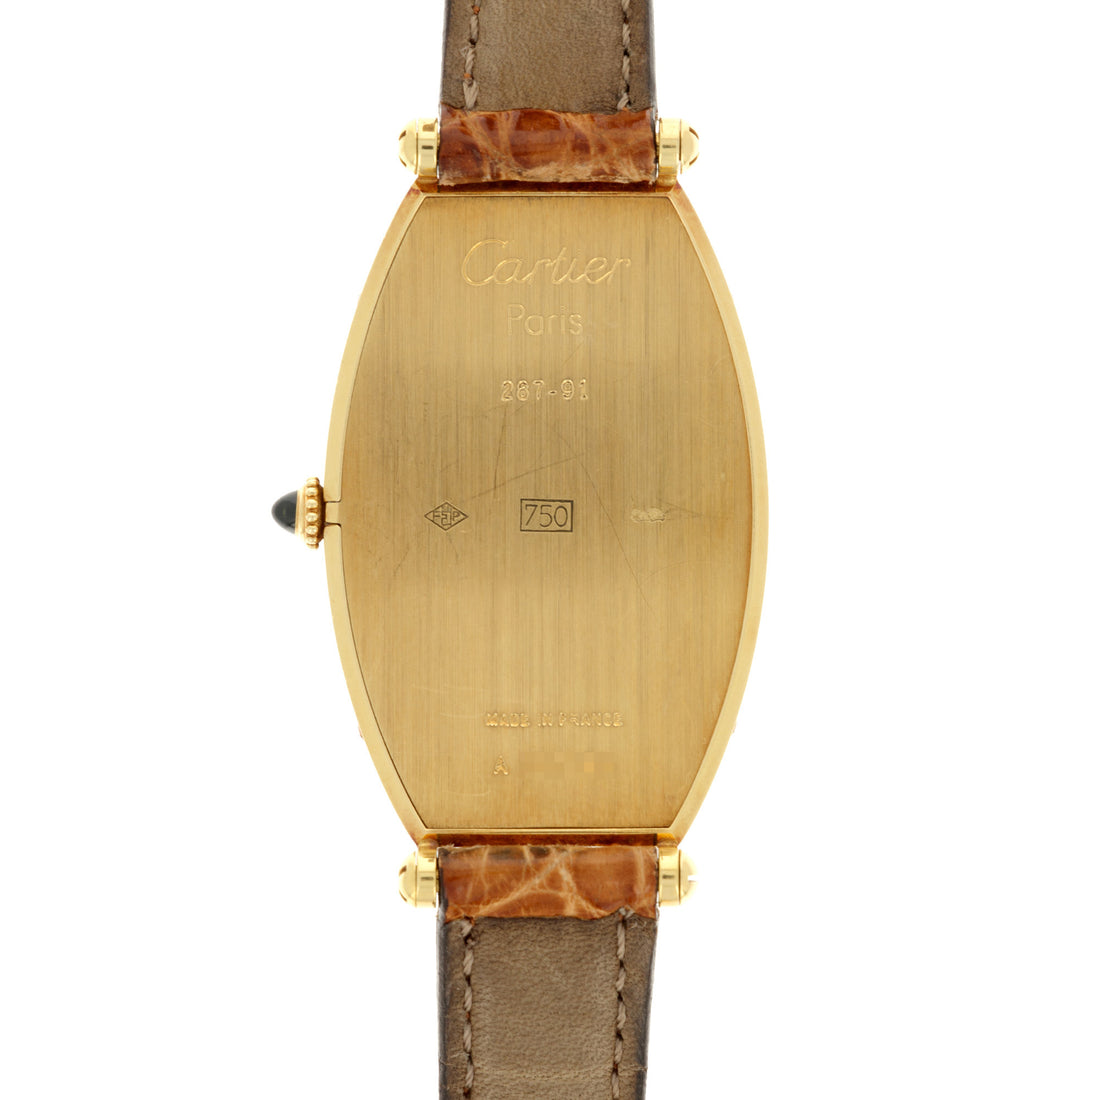 Cartier Paris Yellow Gold Tonneau Mechanical Watch